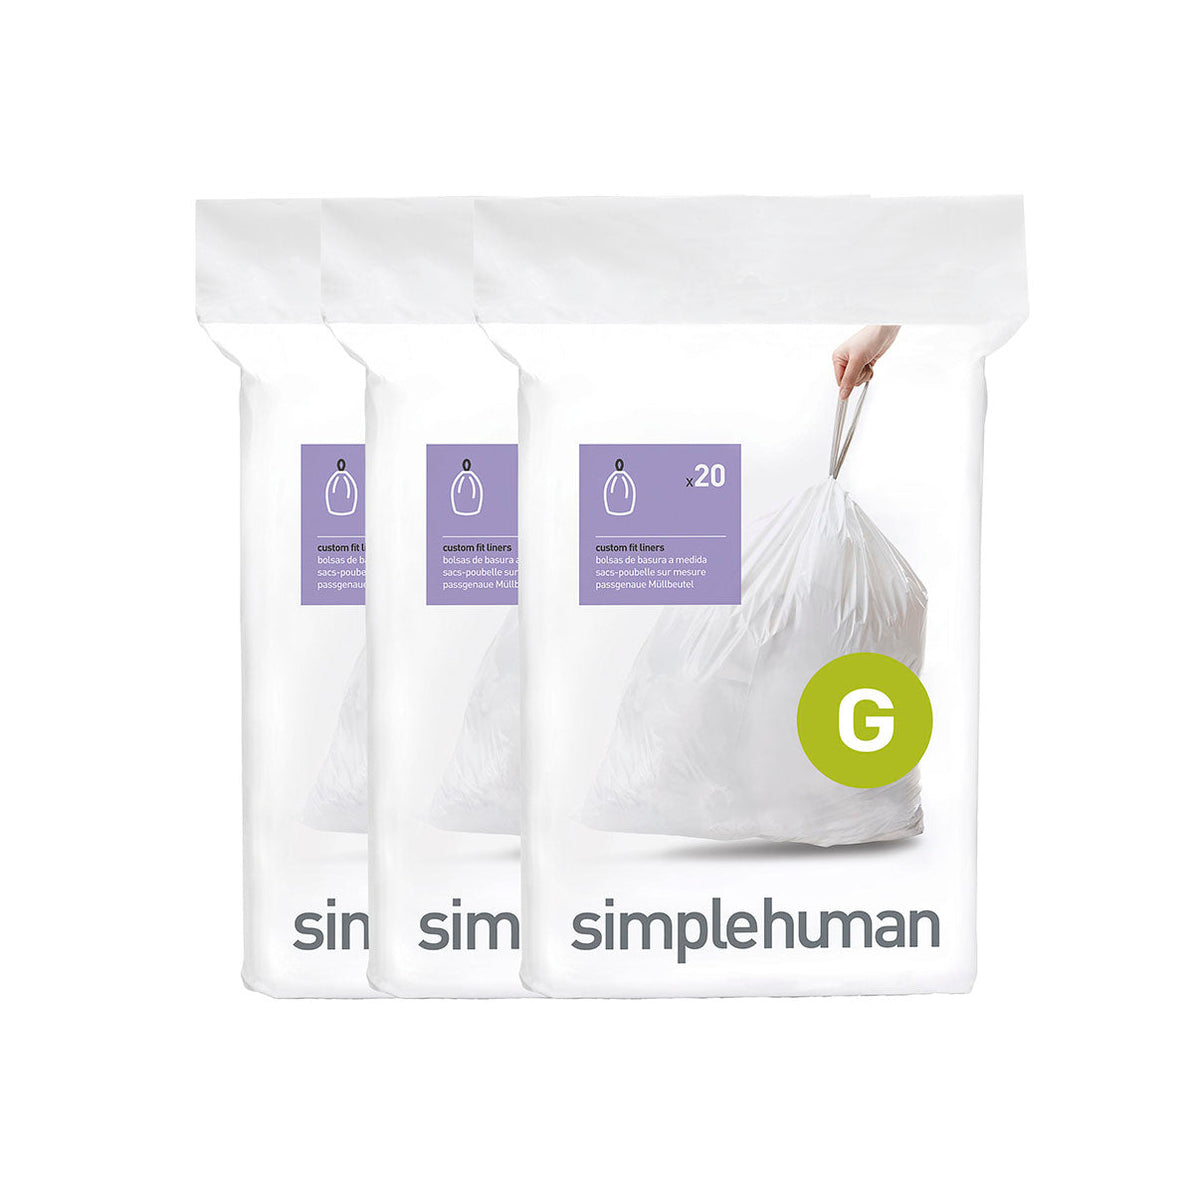 שקיות אשפה לפח 30 ליטר (G) דגם Simplehuman - CW0257 - סימפליומן